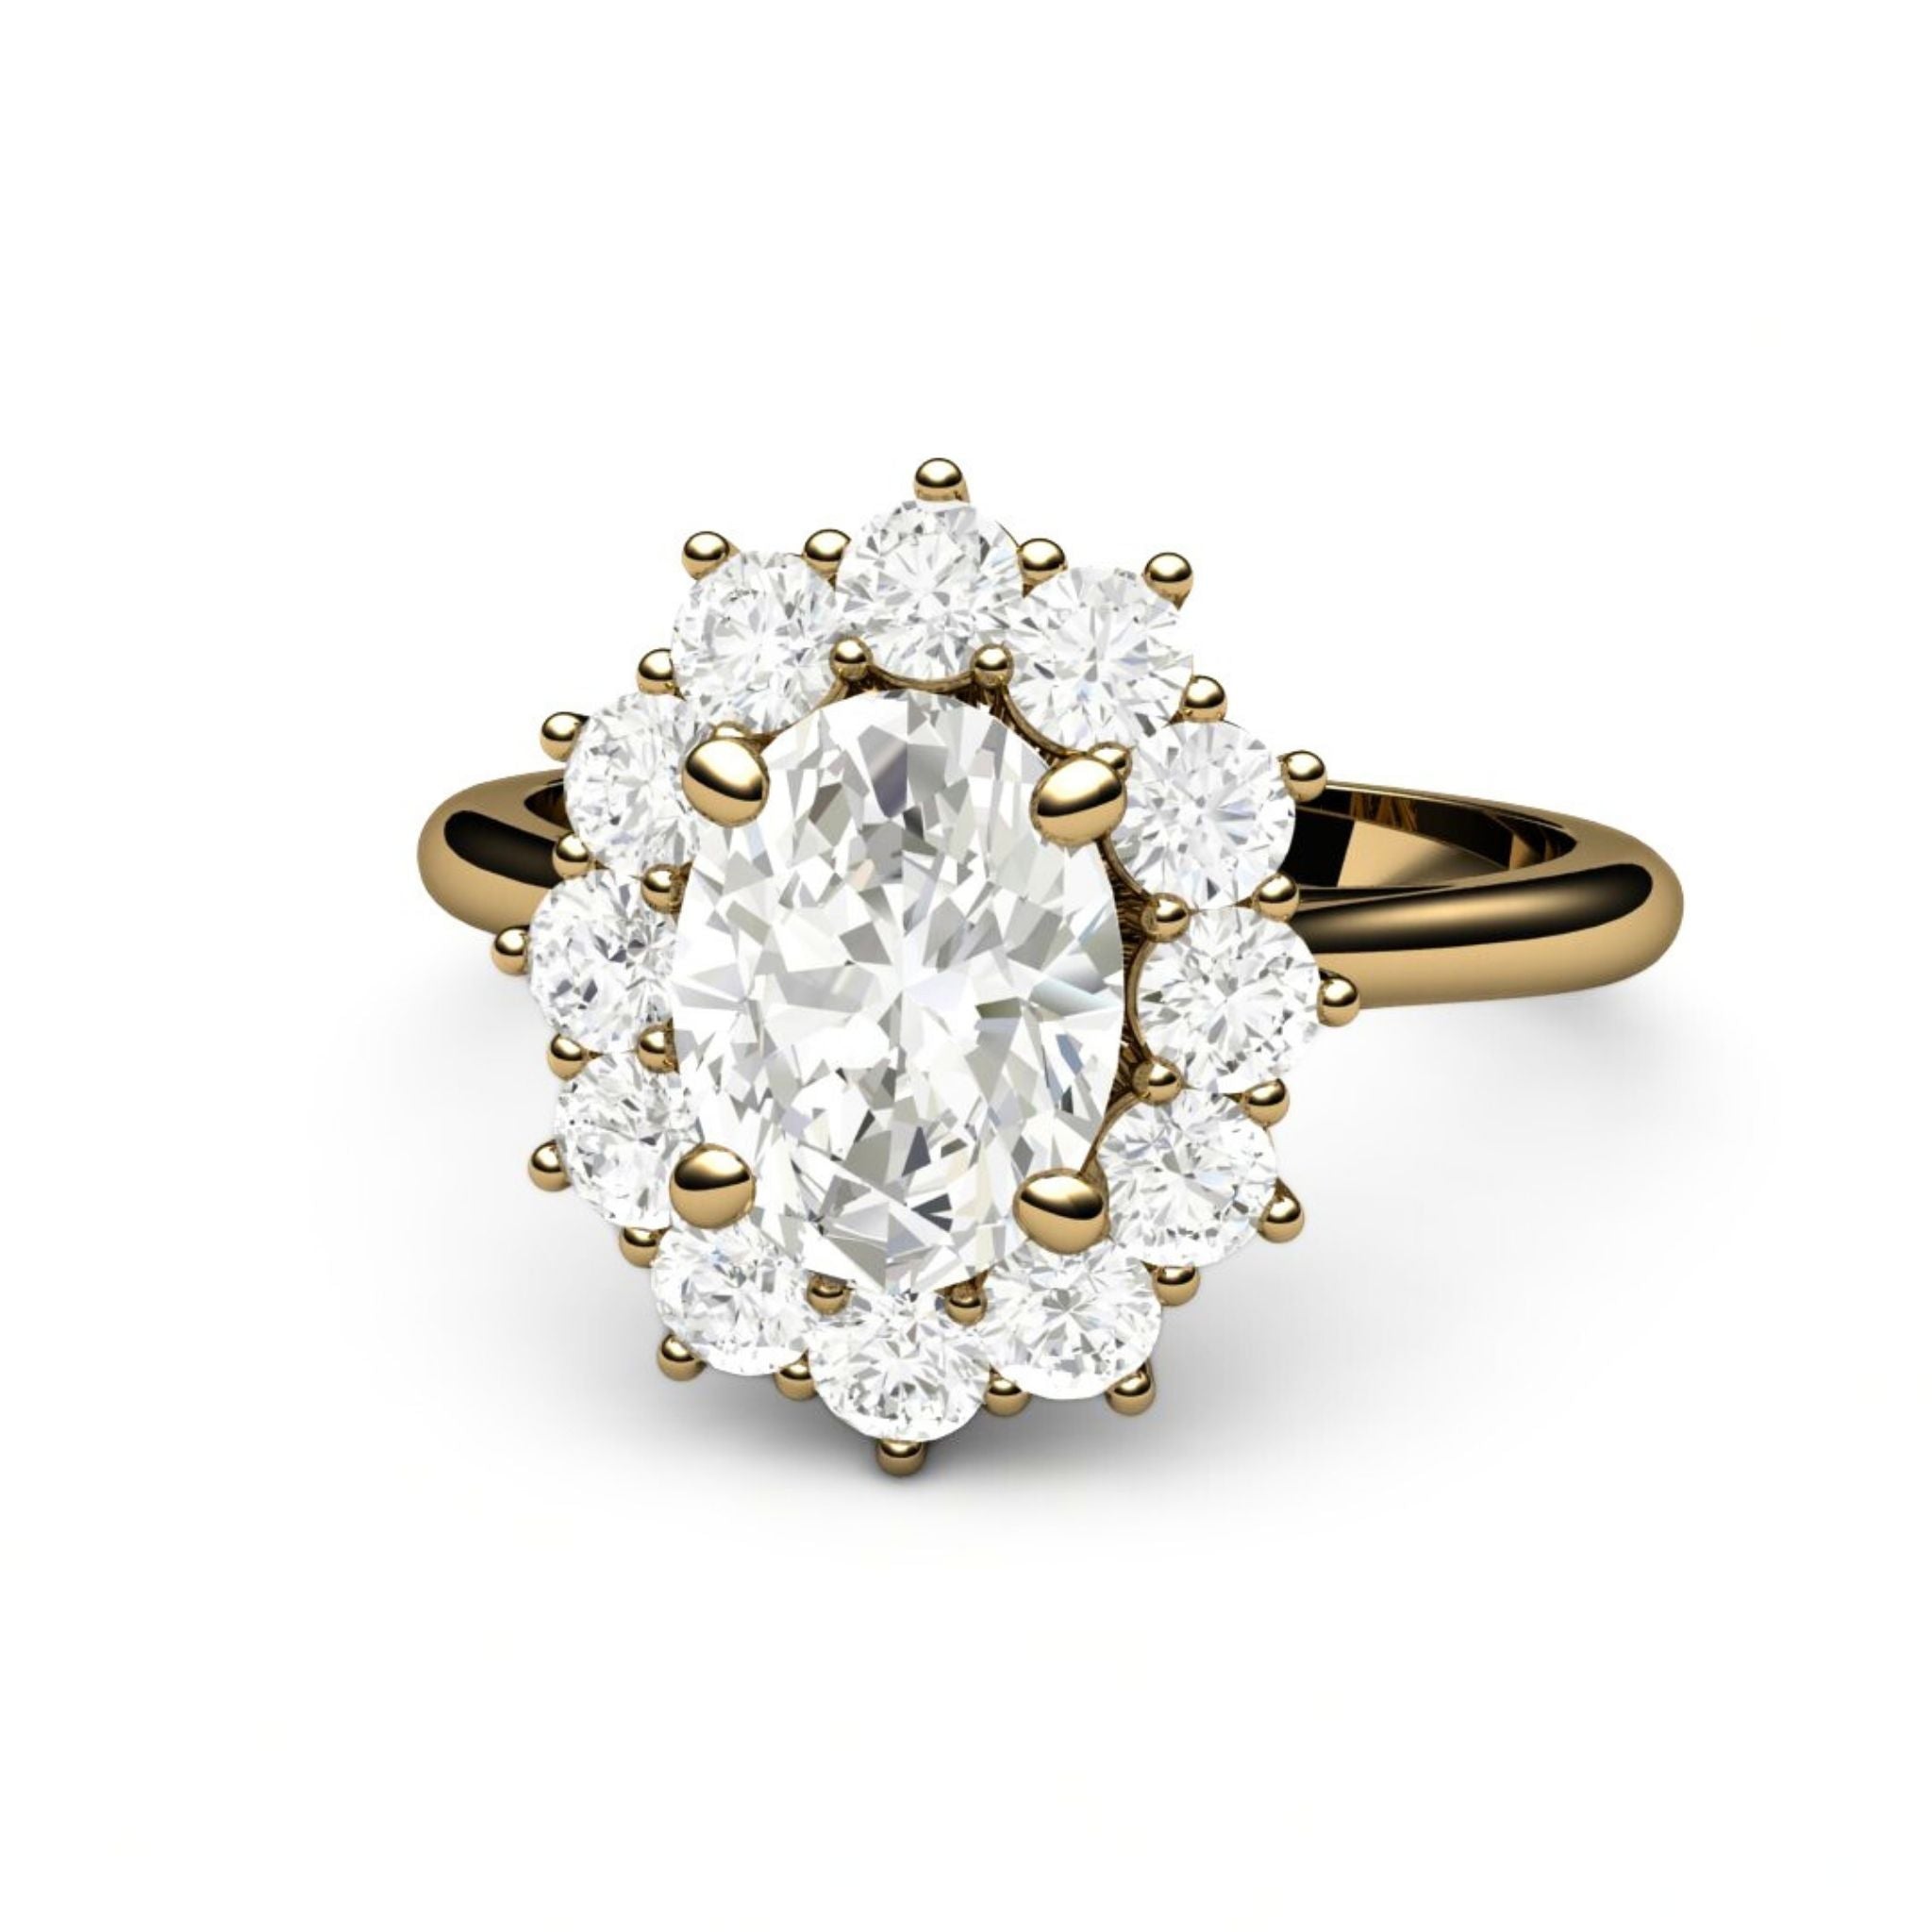 2ct Moissanite ring vintage oval moissanite engagement ring rose gold –  Ohjewel